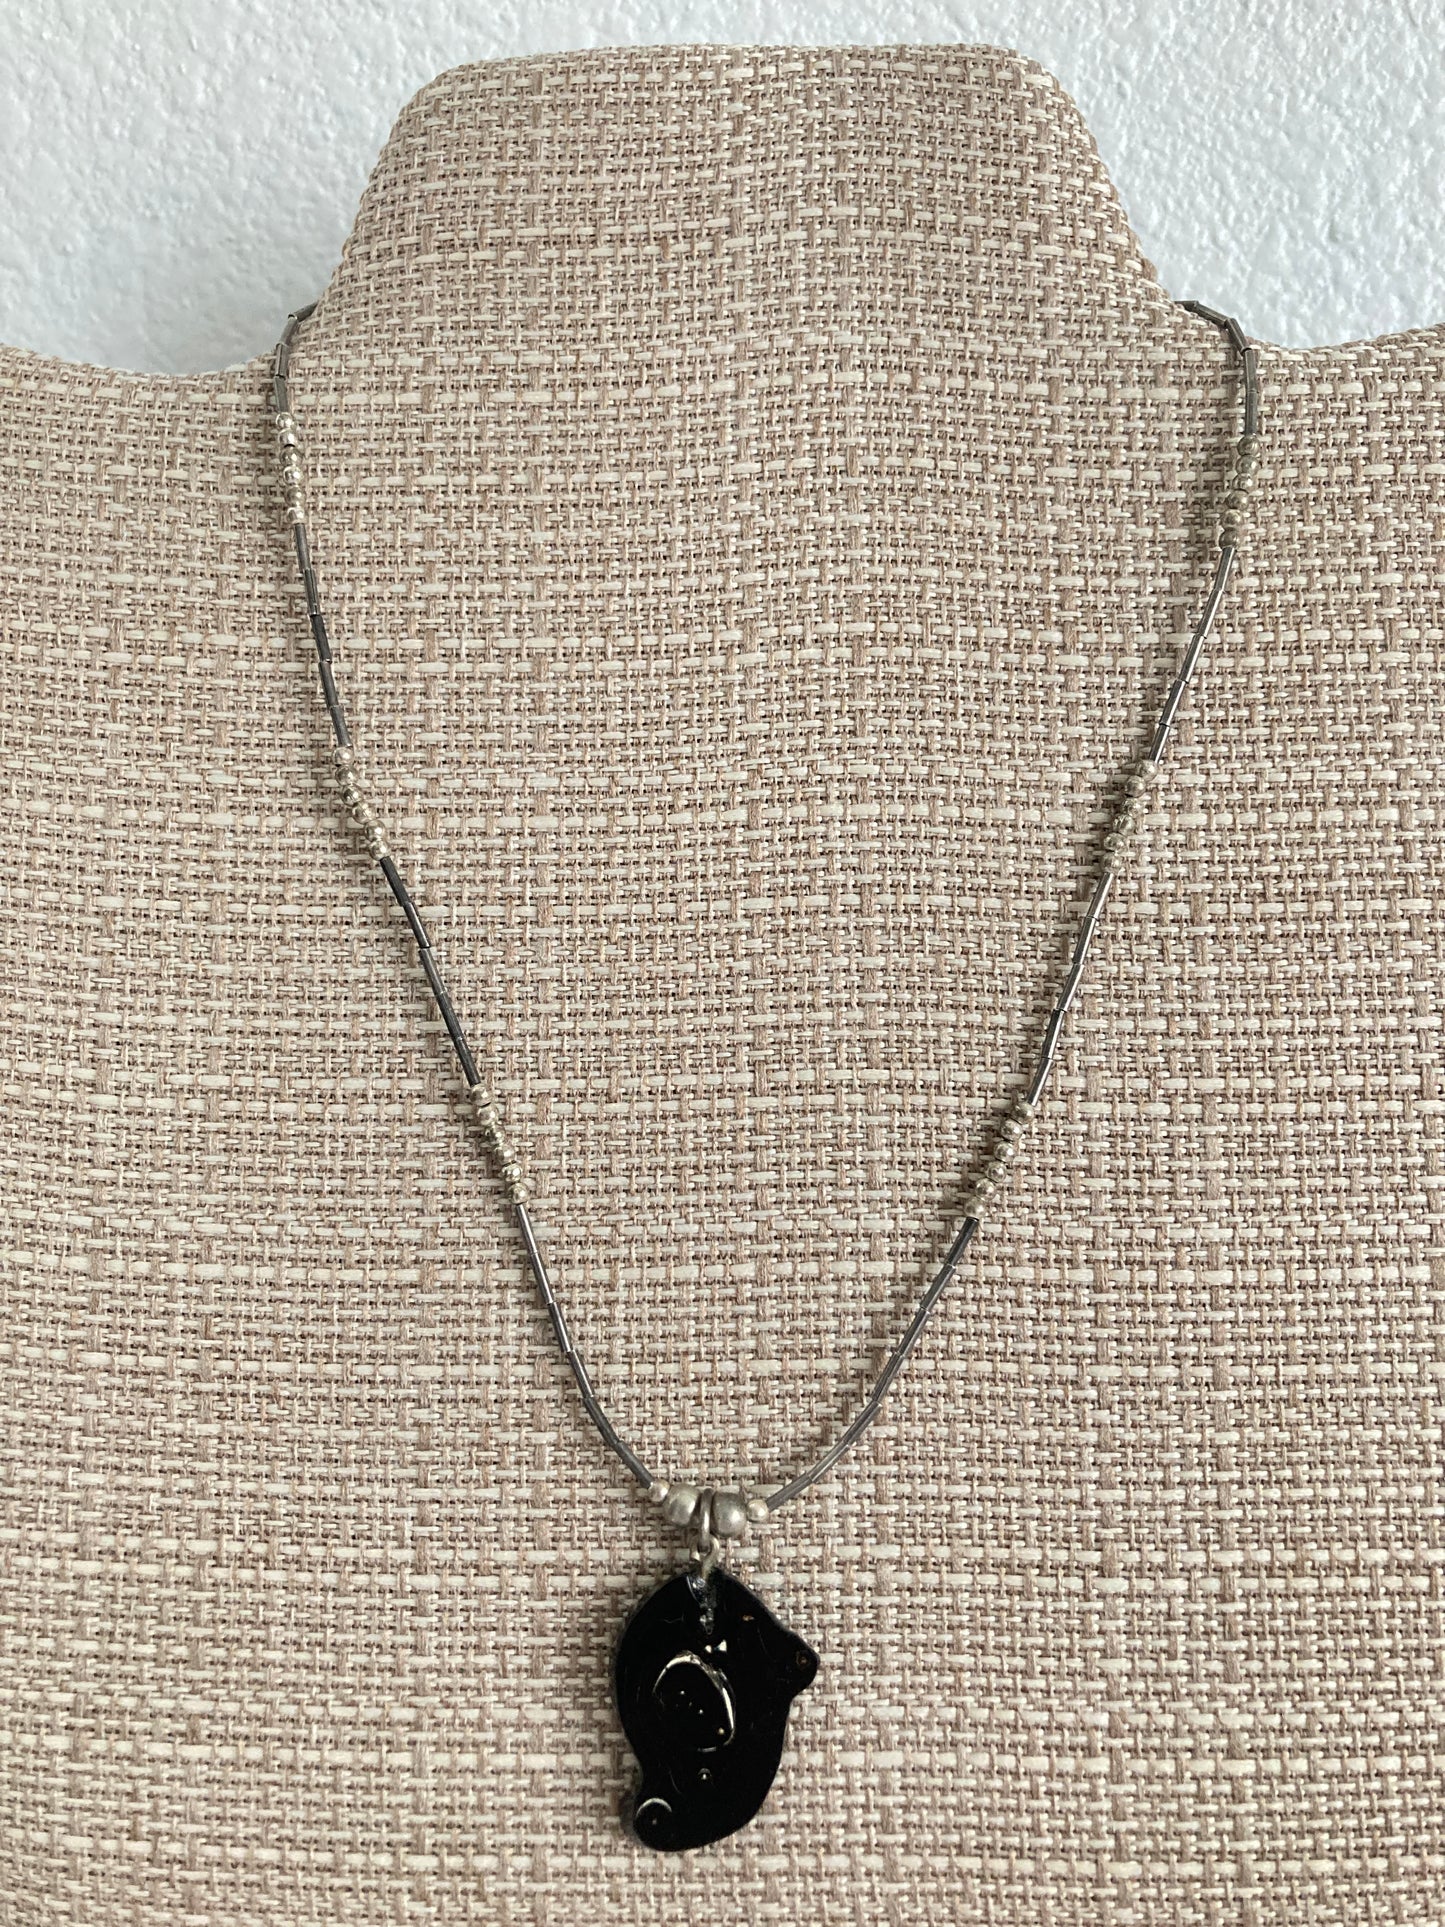 Black Coral Pendant Necklace